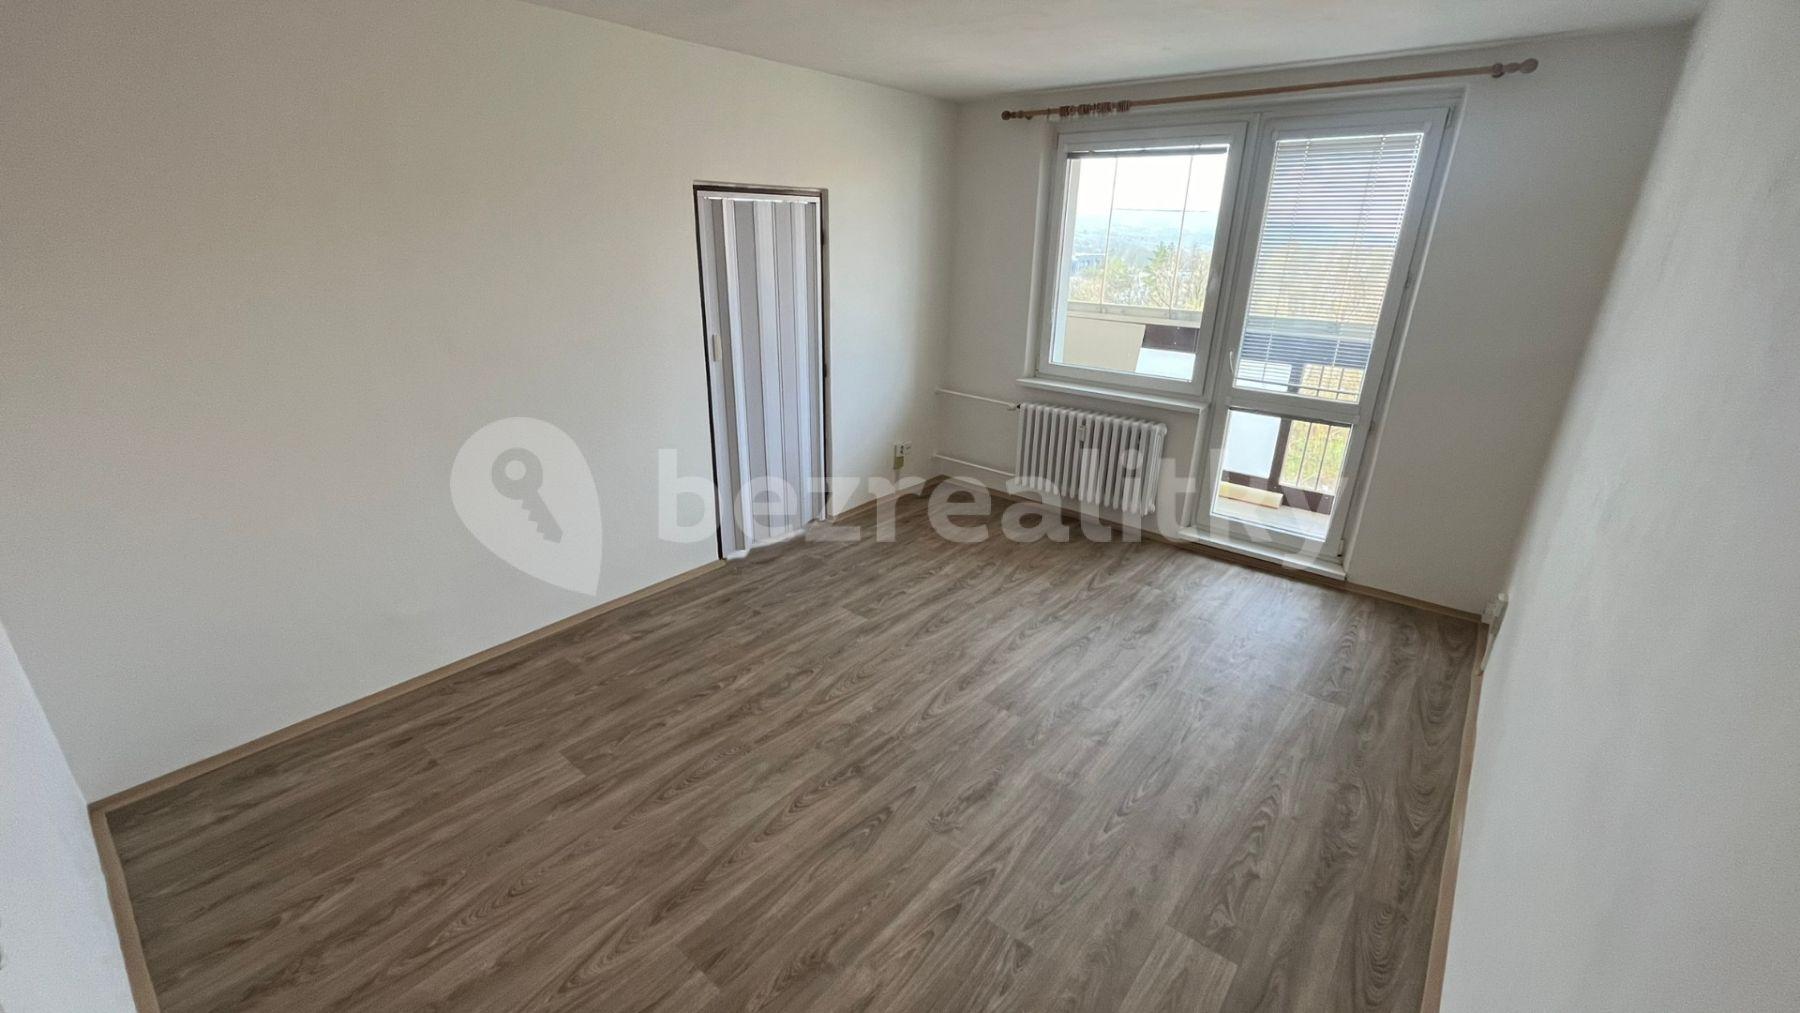 2 bedroom flat to rent, 56 m², Oděská, Rožnov pod Radhoštěm, Zlínský Region